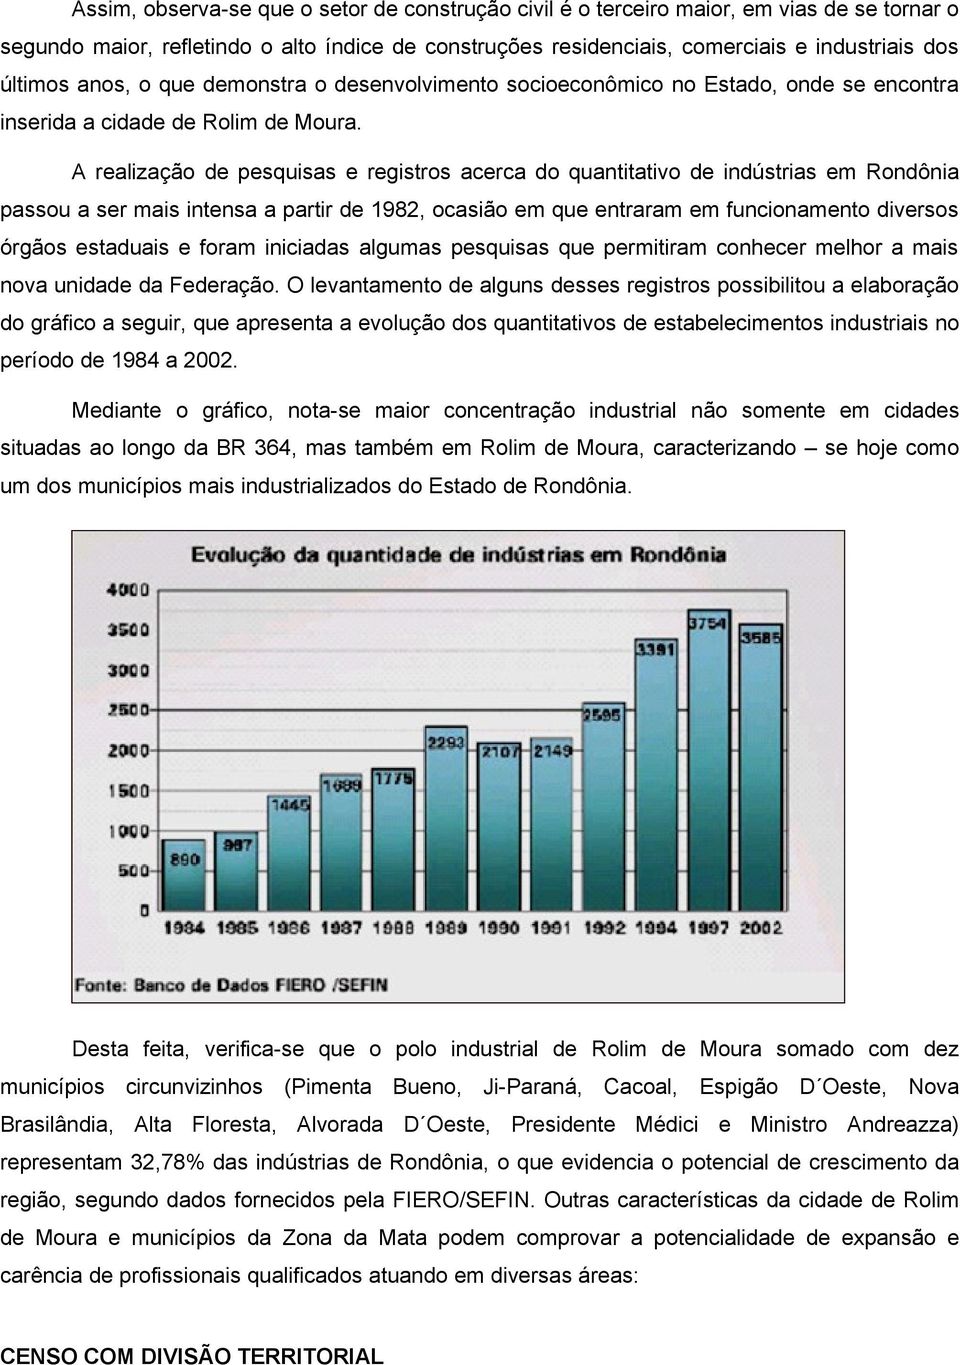 A realização de pesquisas e registros acerca do quantitativo de indústrias em Rondônia passou a ser mais intensa a partir de 1982, ocasião em que entraram em funcionamento diversos órgãos estaduais e